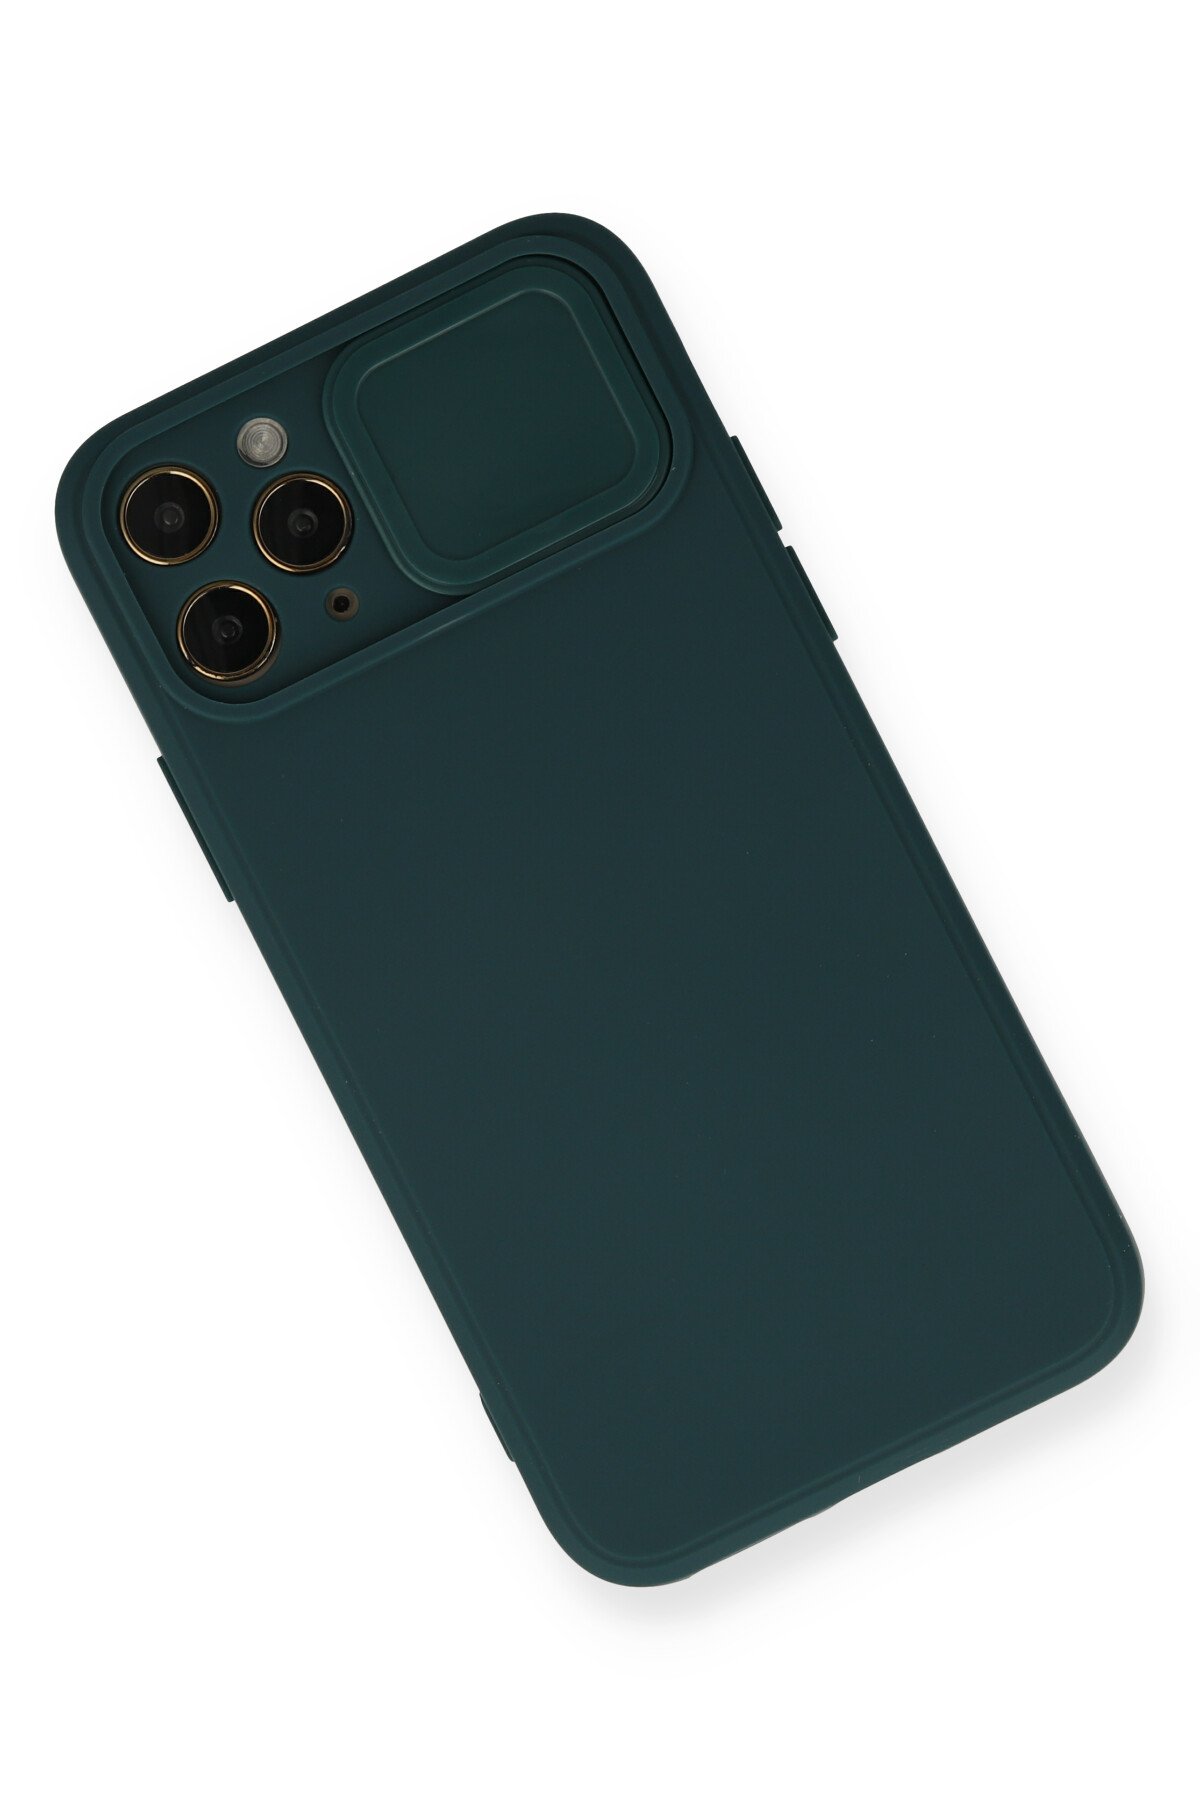 Newface iPhone 11 Pro Max Kılıf Lansman Legant Silikon - Bordo